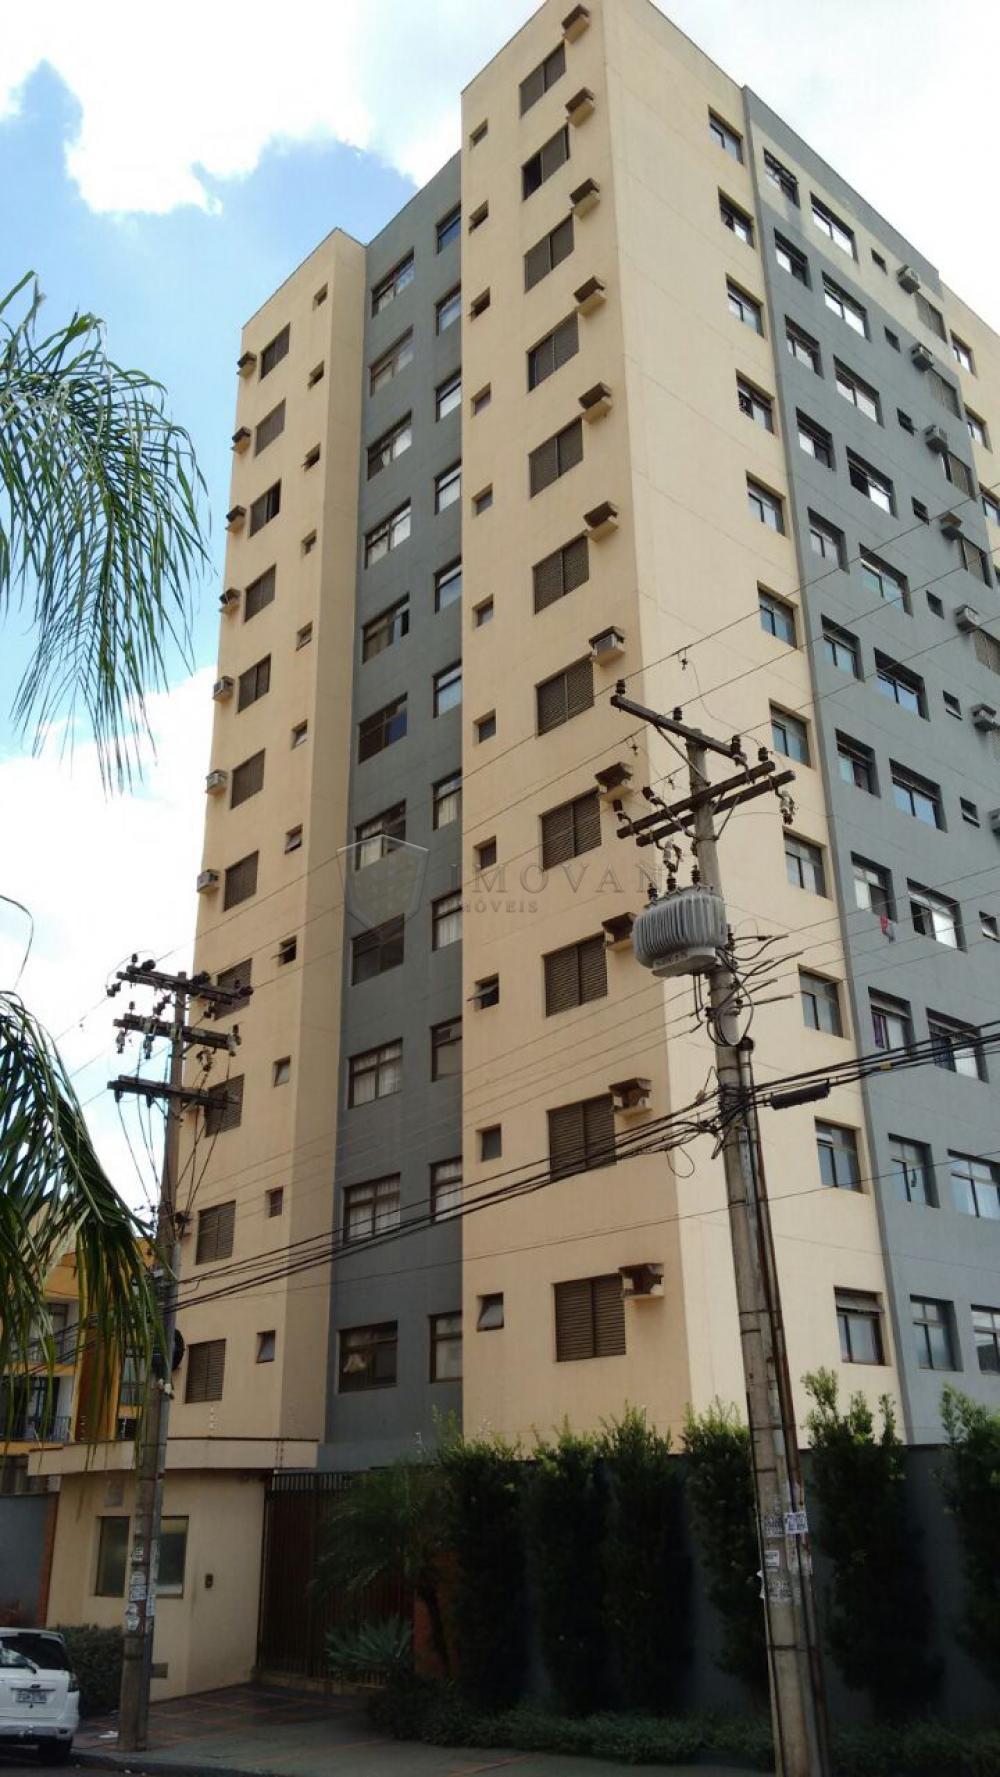 Comprar Apartamento / Padrão em Ribeirão Preto R$ 160.000,00 - Foto 2